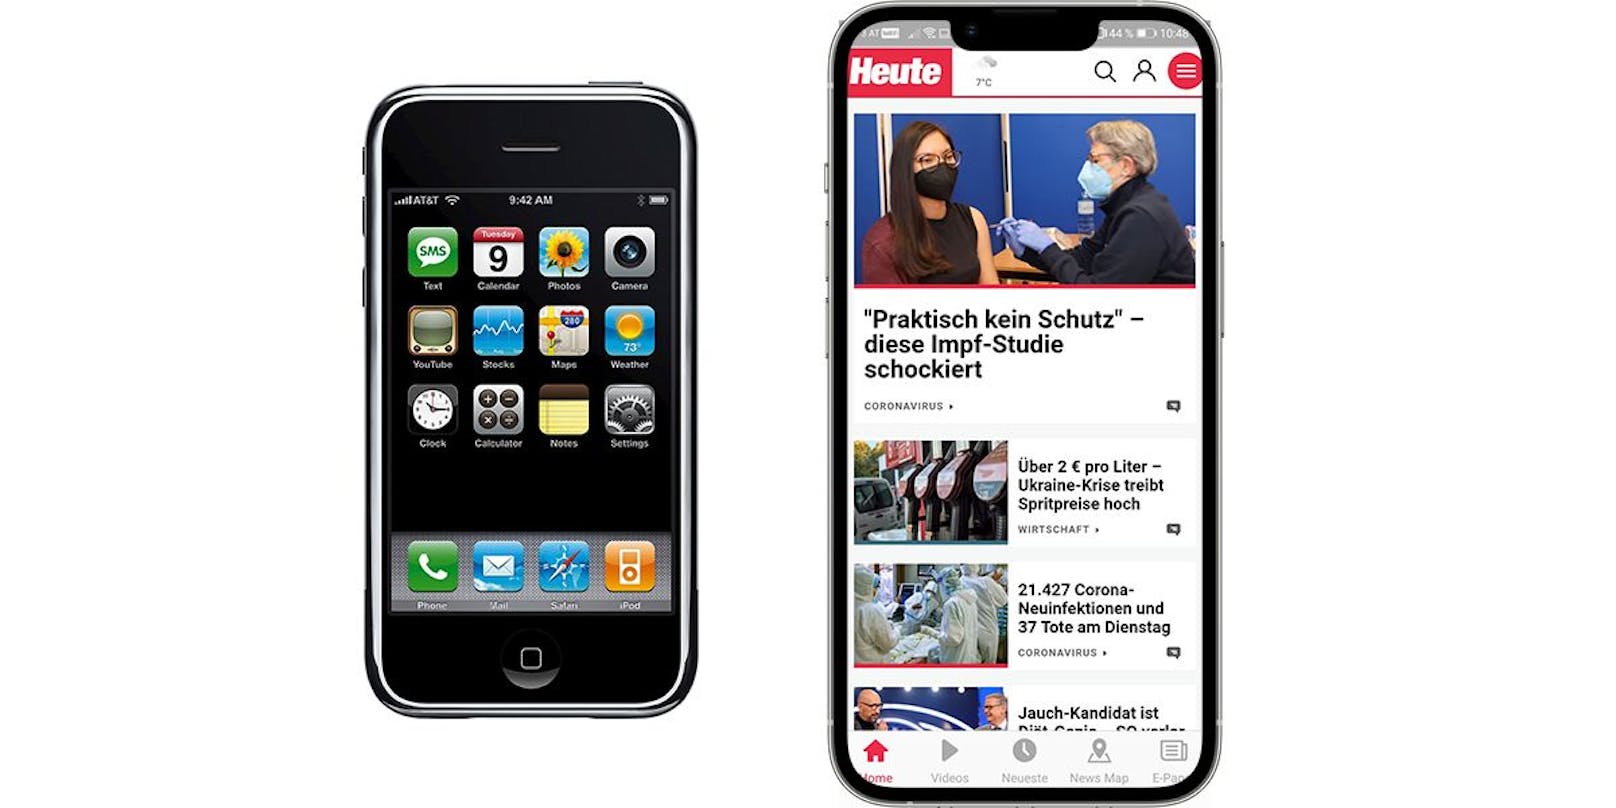 Visionär: Das erste iPhone kam 2007 auf den Markt, zeitgleich ging <em>"Heute"</em> online.